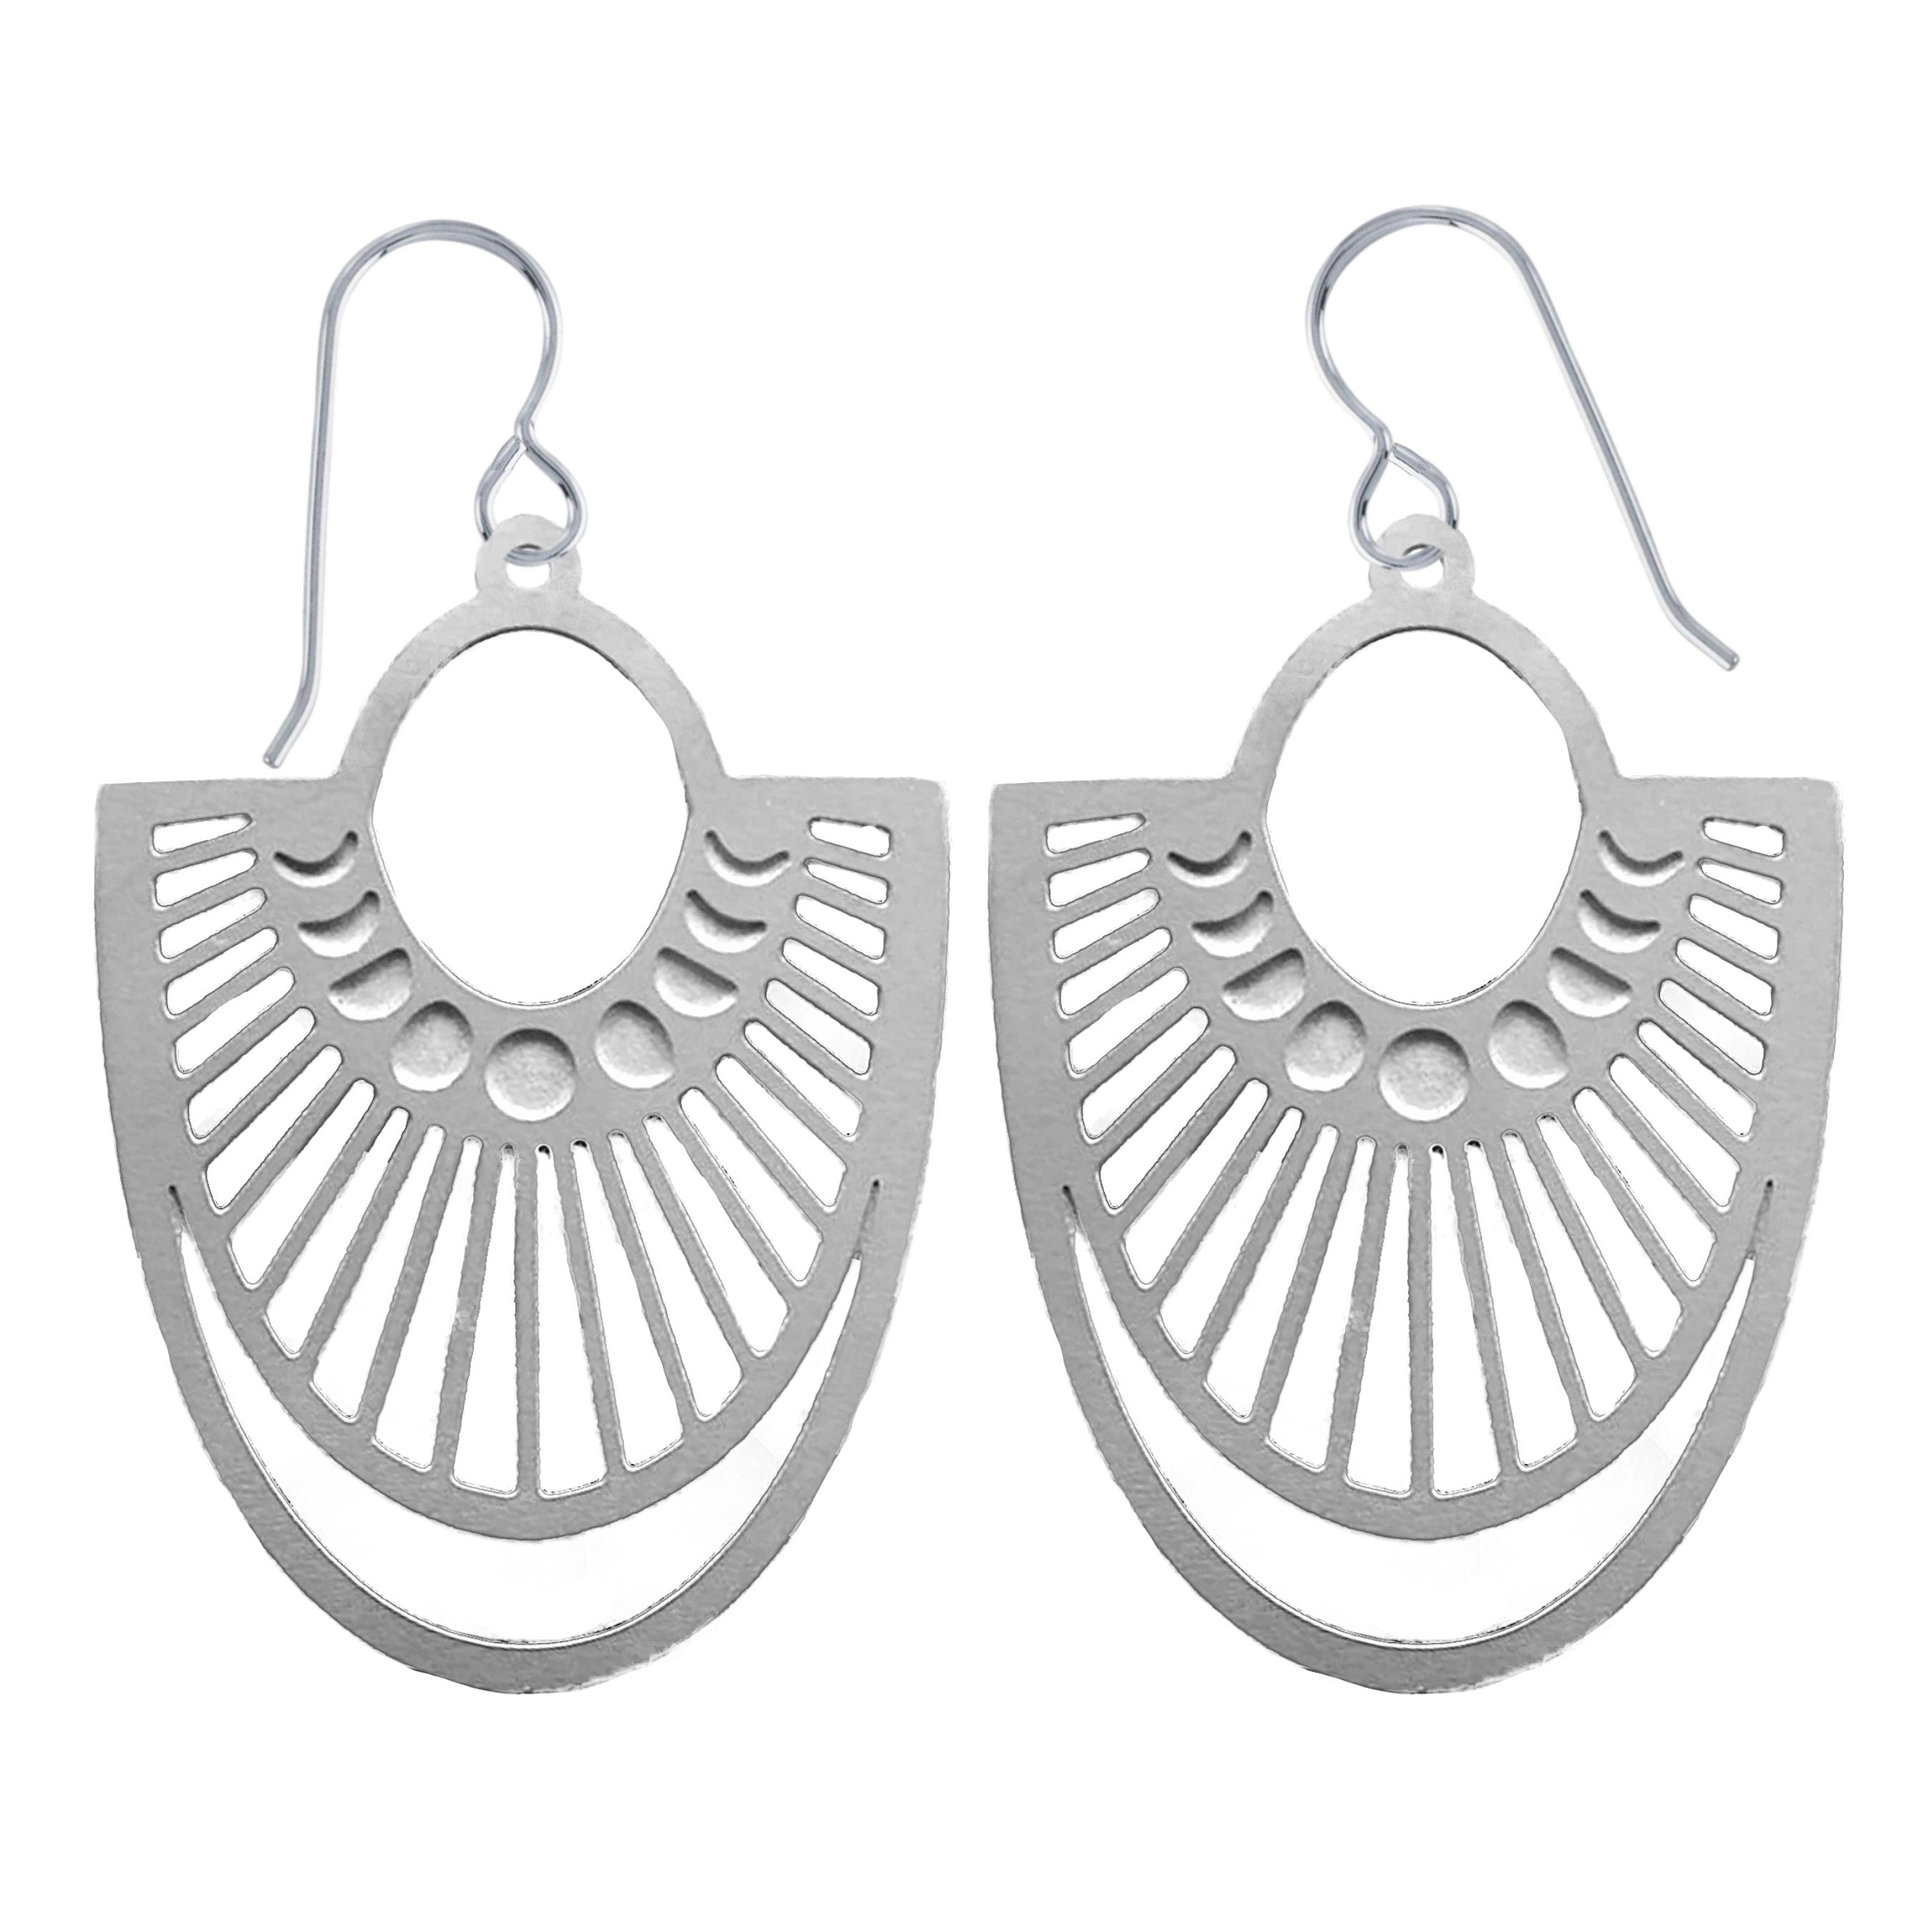 Moon Phase Fan Earrings - Melanie Golden Jewelry - dangle earrings, earrings